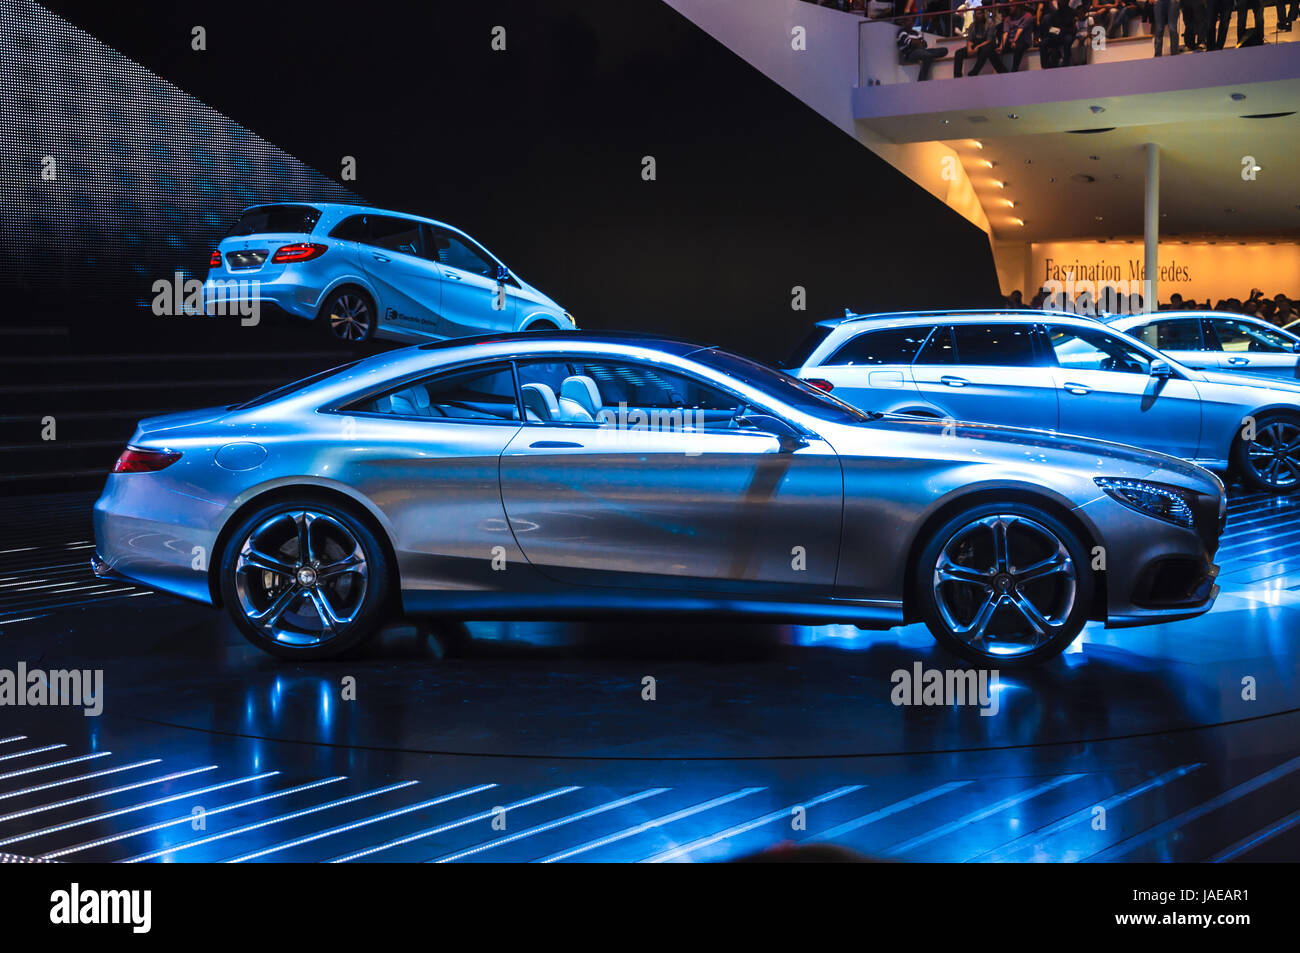 Francfort - 21 SEPT : Concept Mercedes-Benz Classe S Coupé présenté en première mondiale à la 65ème IAA (Internationale Automobil Ausstellung) le 21 septembre 2013 à Francfort, Allemagne Banque D'Images